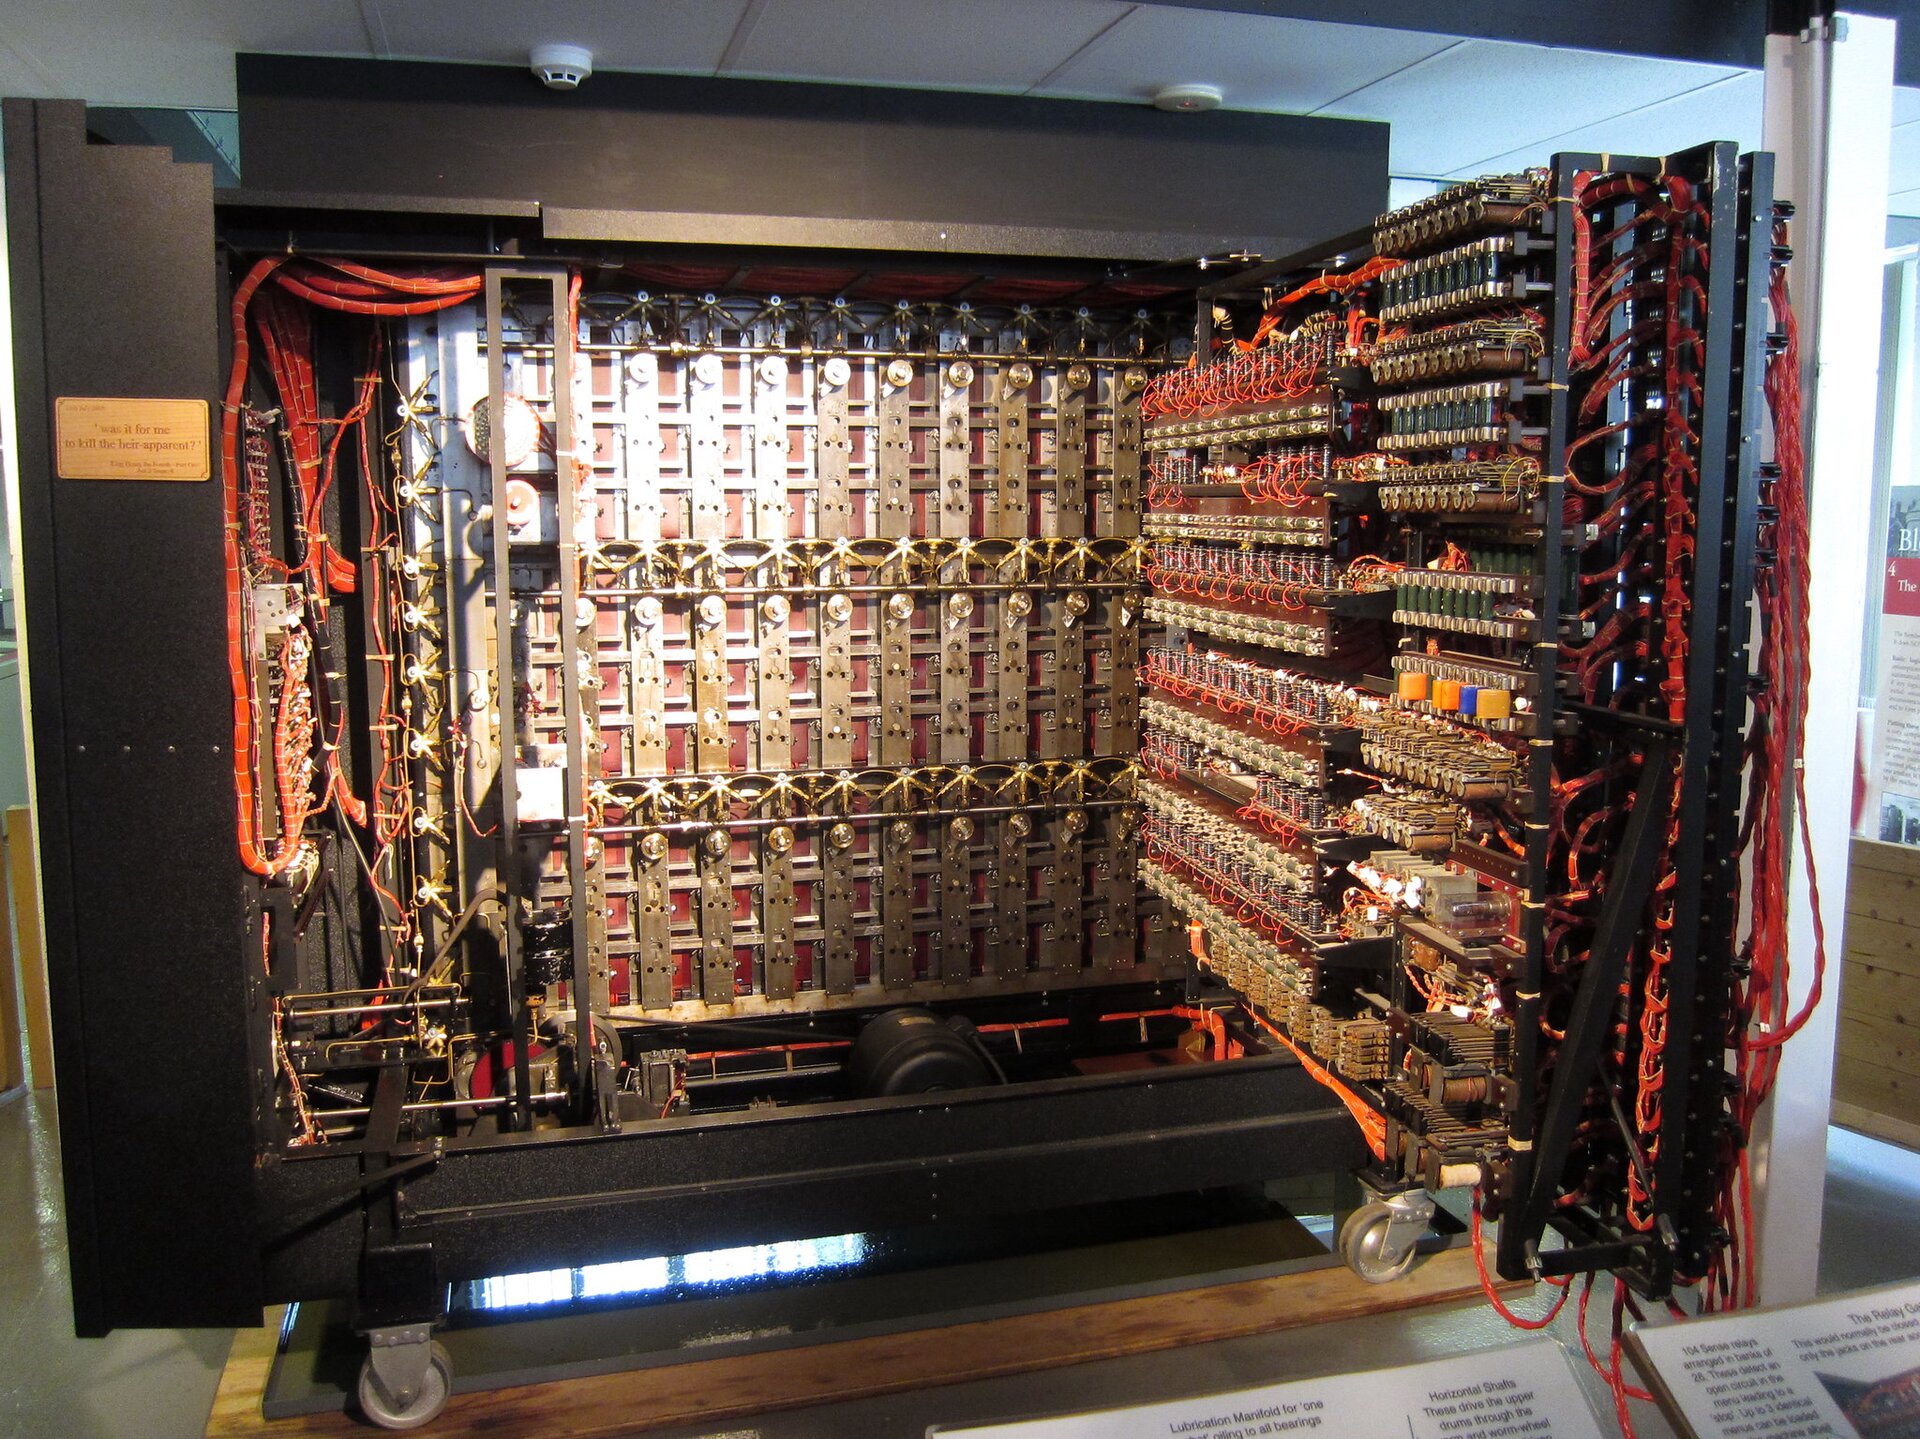 Turing razem z współpracownikami z Bletchley Park stworzyli urządzenie służące do łamania kodu Enigmy – niemieckiej maszyny szyfrującej. 